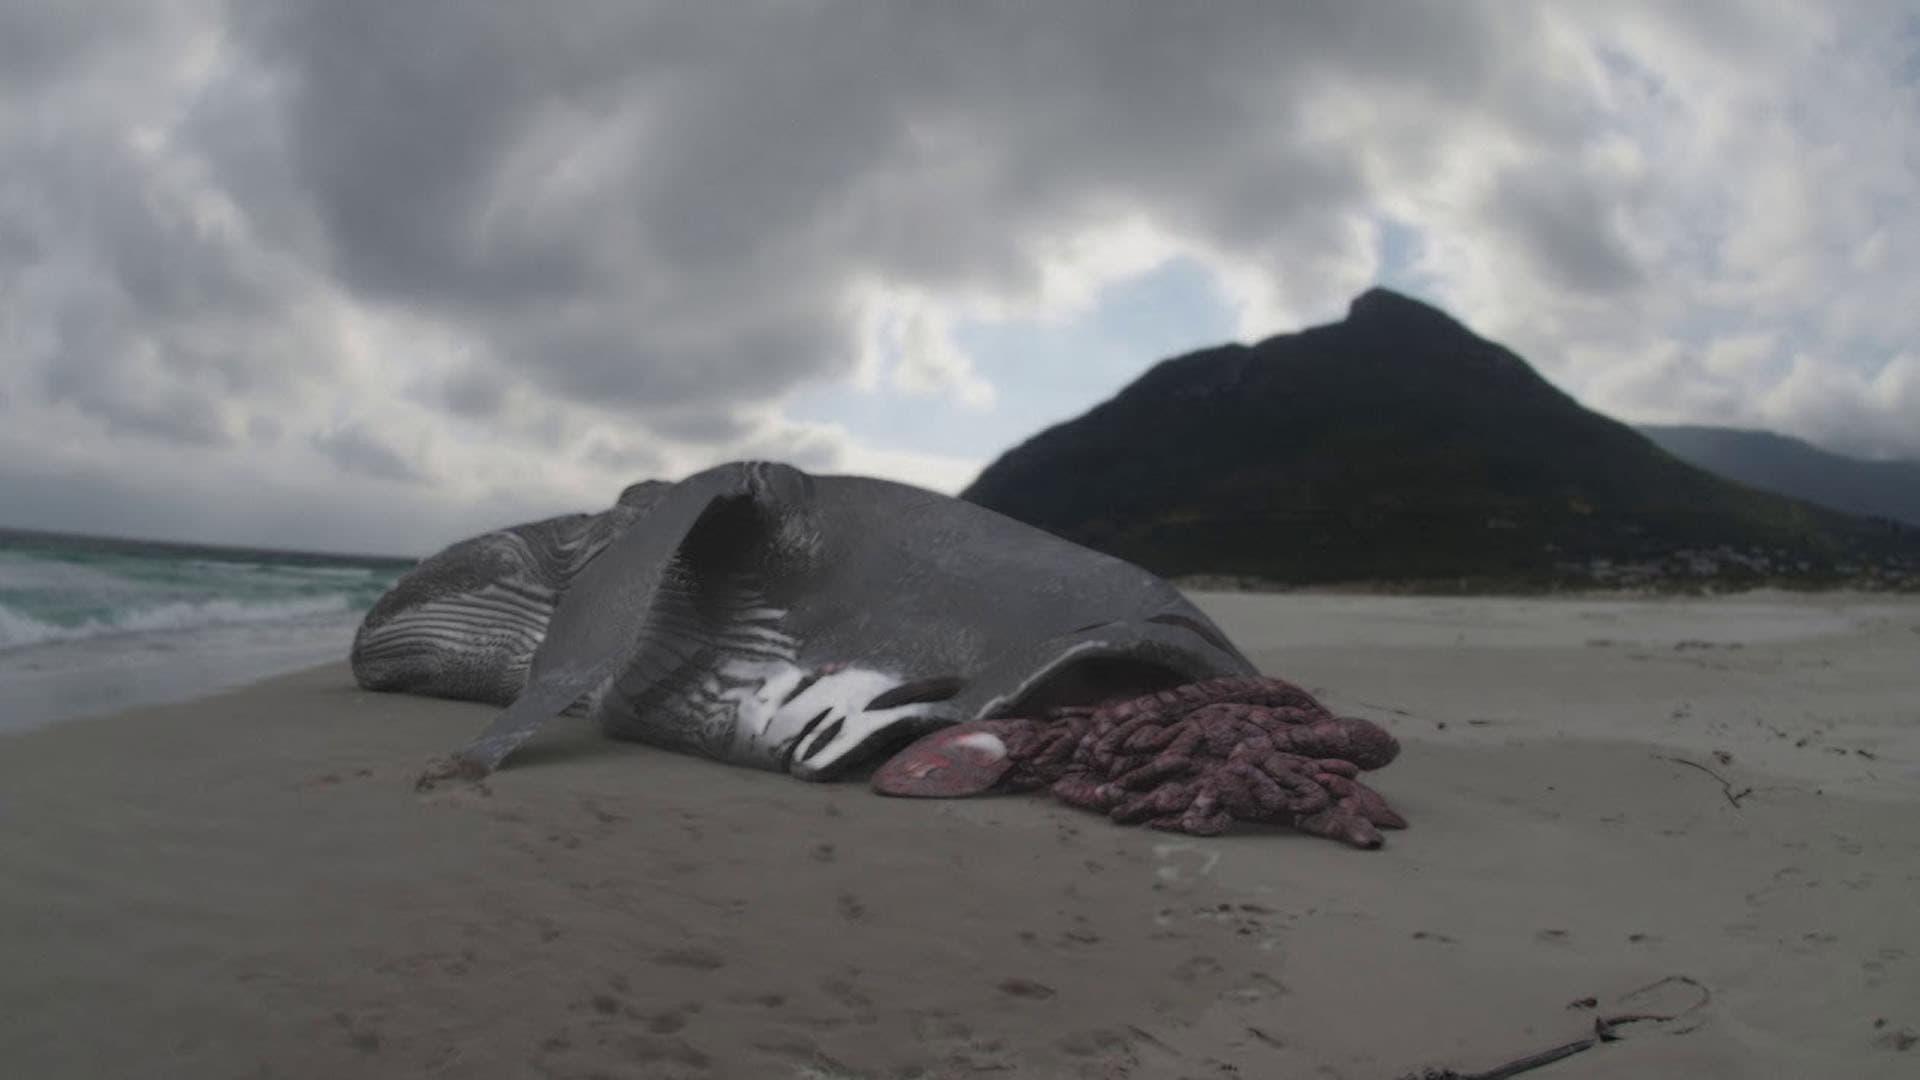 Megalodon: The Monster Shark Lives backdrop